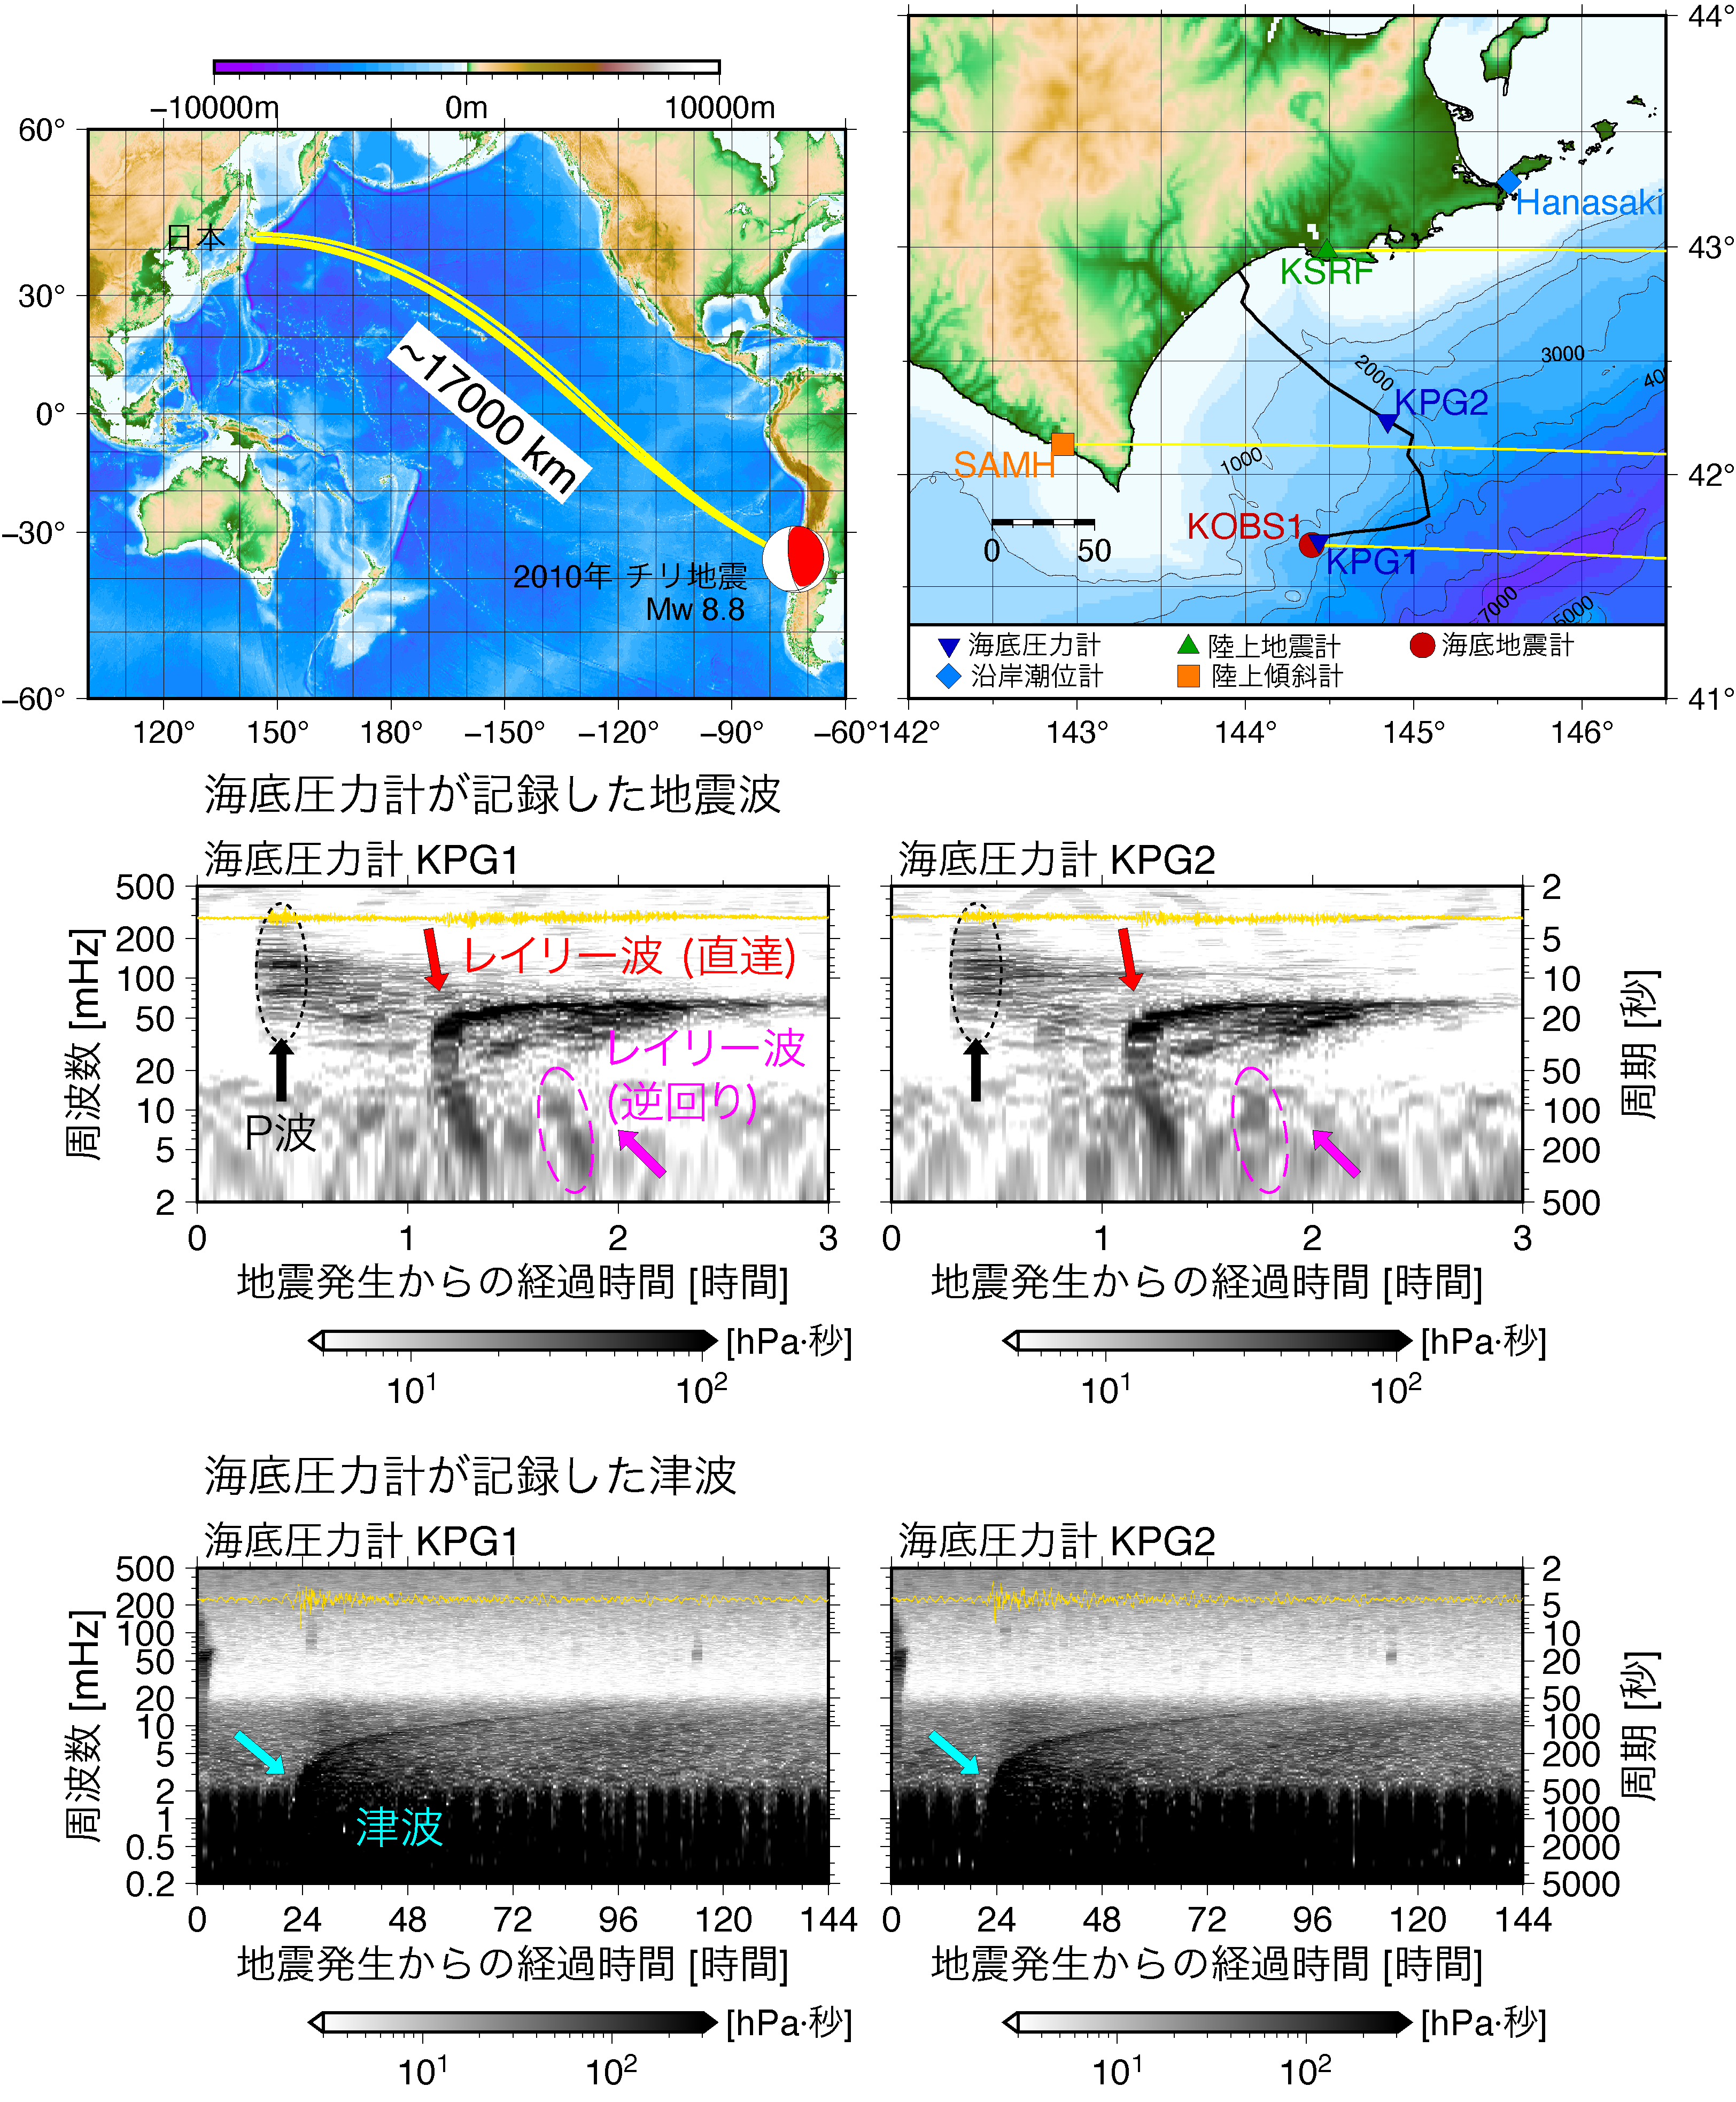 (上) 2010年チリ地震と日本の位置関係，および本研究の解析対象である北海道周辺での海陸の観測点の位置．(中) 2010年チリ地震後3時間の海底圧力計KPG1とKPG2の記録のランニングスペクトル．黄色線で描かれた波形は実際の観測波形．P波 (黒)，地震波の表面波の一種であるレイリー波 (赤)，および地球の反対側を回ってきたレイリー波 (ピンク) が確認できる．(下) 2010年チリ地震後5日間の海底圧力計KPG1とKPG2の記録のランニングスペクトル．津波 (青) が確認できる．